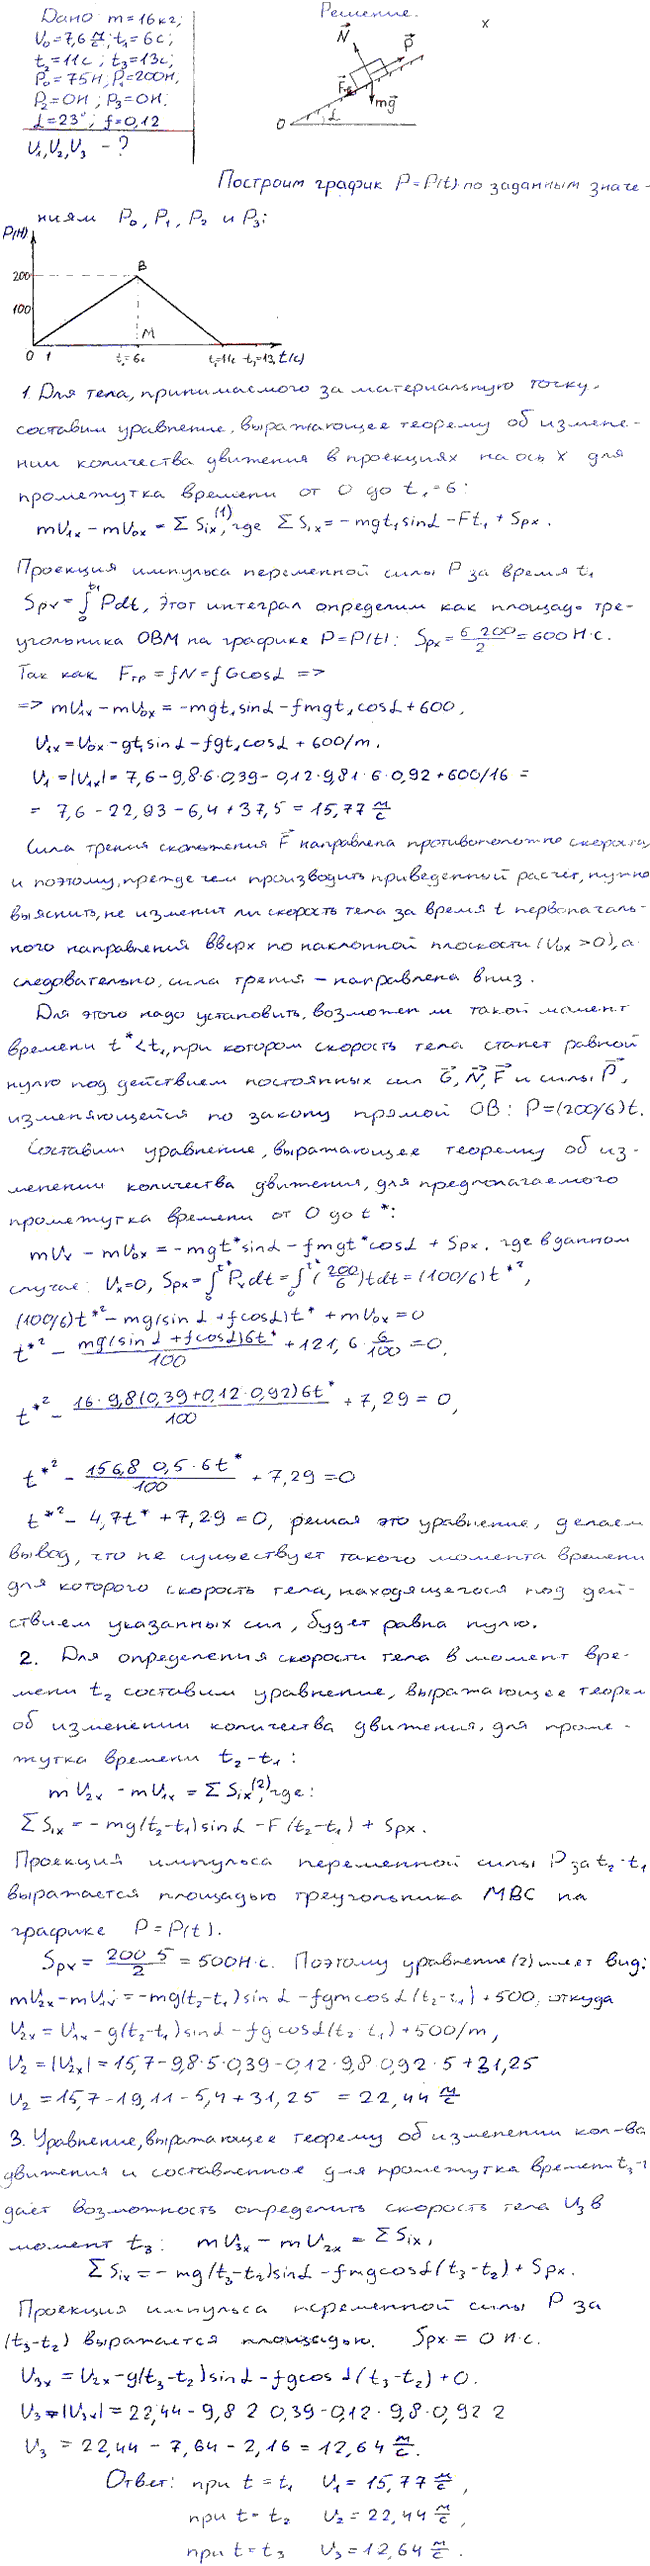 Задание Д.5 вариант 8. m=16 кг; v0=7,6 м/с; t1=6 с; t2=11 с; t3=13 с; P0=75 Н; P1=200 Н; P2=0 Н; P3=0 Н; α=23 град; f=0,12